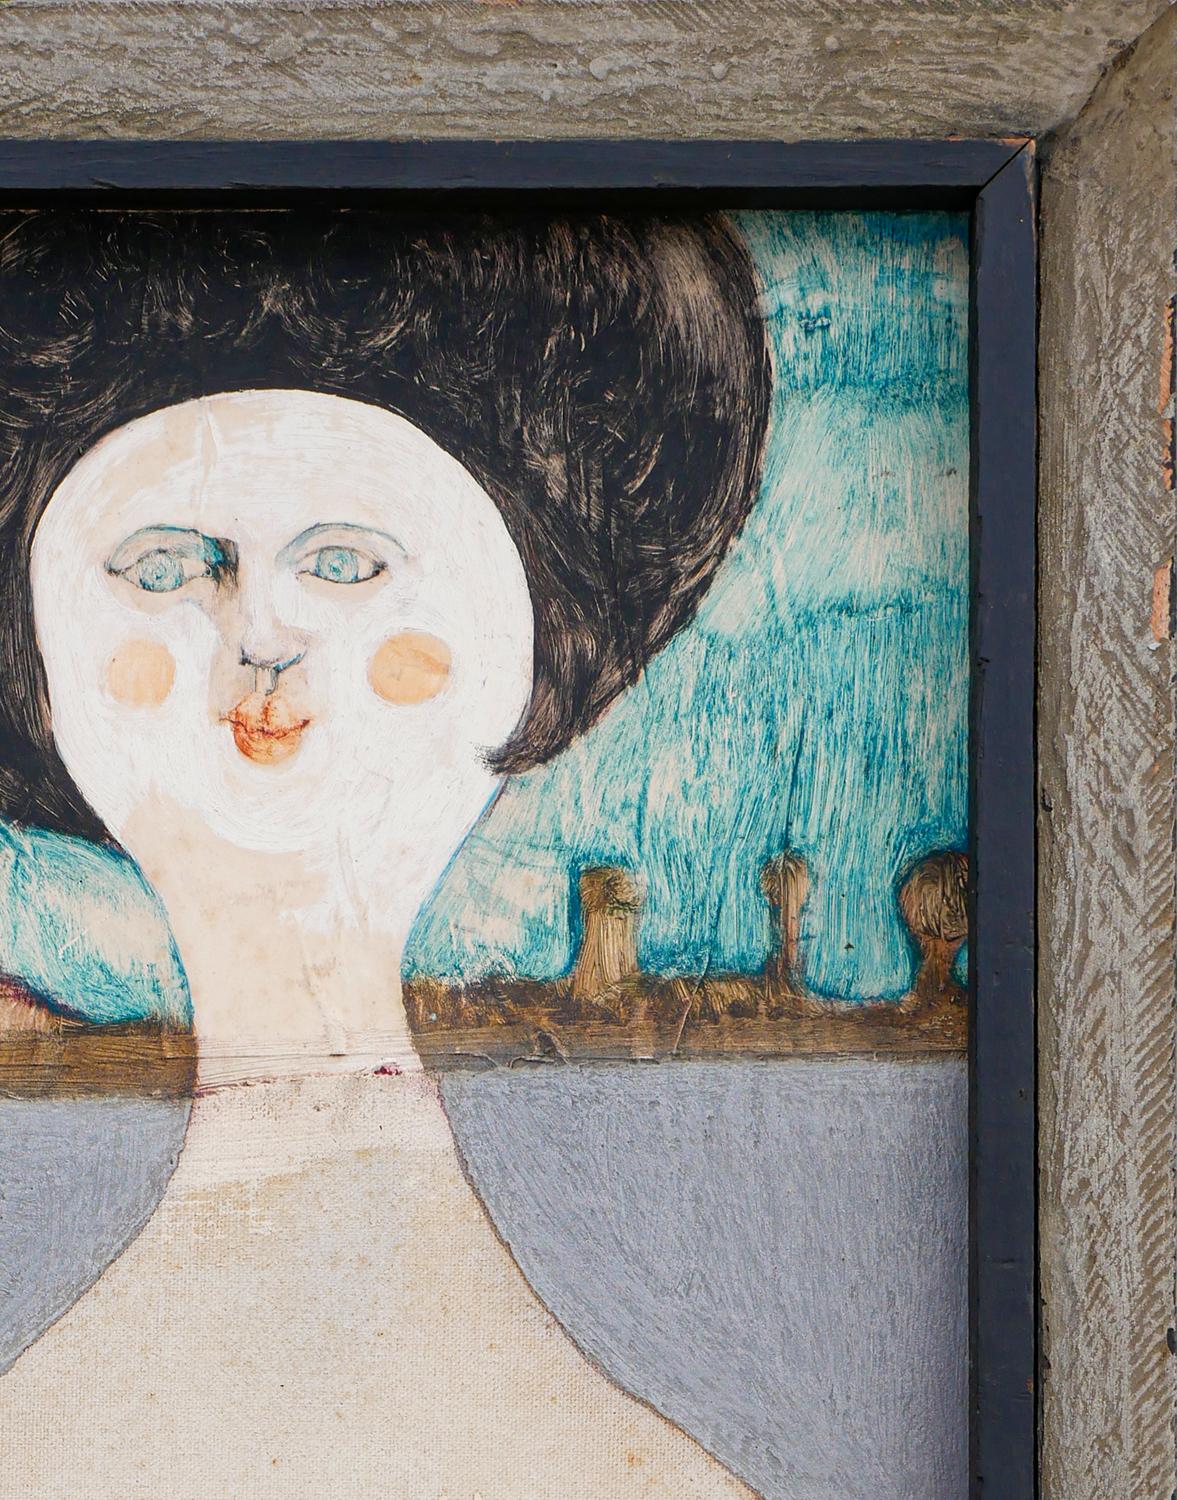 Blaue, pfirsichfarbene und graue abstrakte figurative Mixed-Media-Malerei des Künstlers Charles Pebworth aus Houston, TX. Das Werk zeigt eine Frau mit einer großen Frisur vor einer Landschaftskulisse. Signiert und betitelt vom Künstler auf der